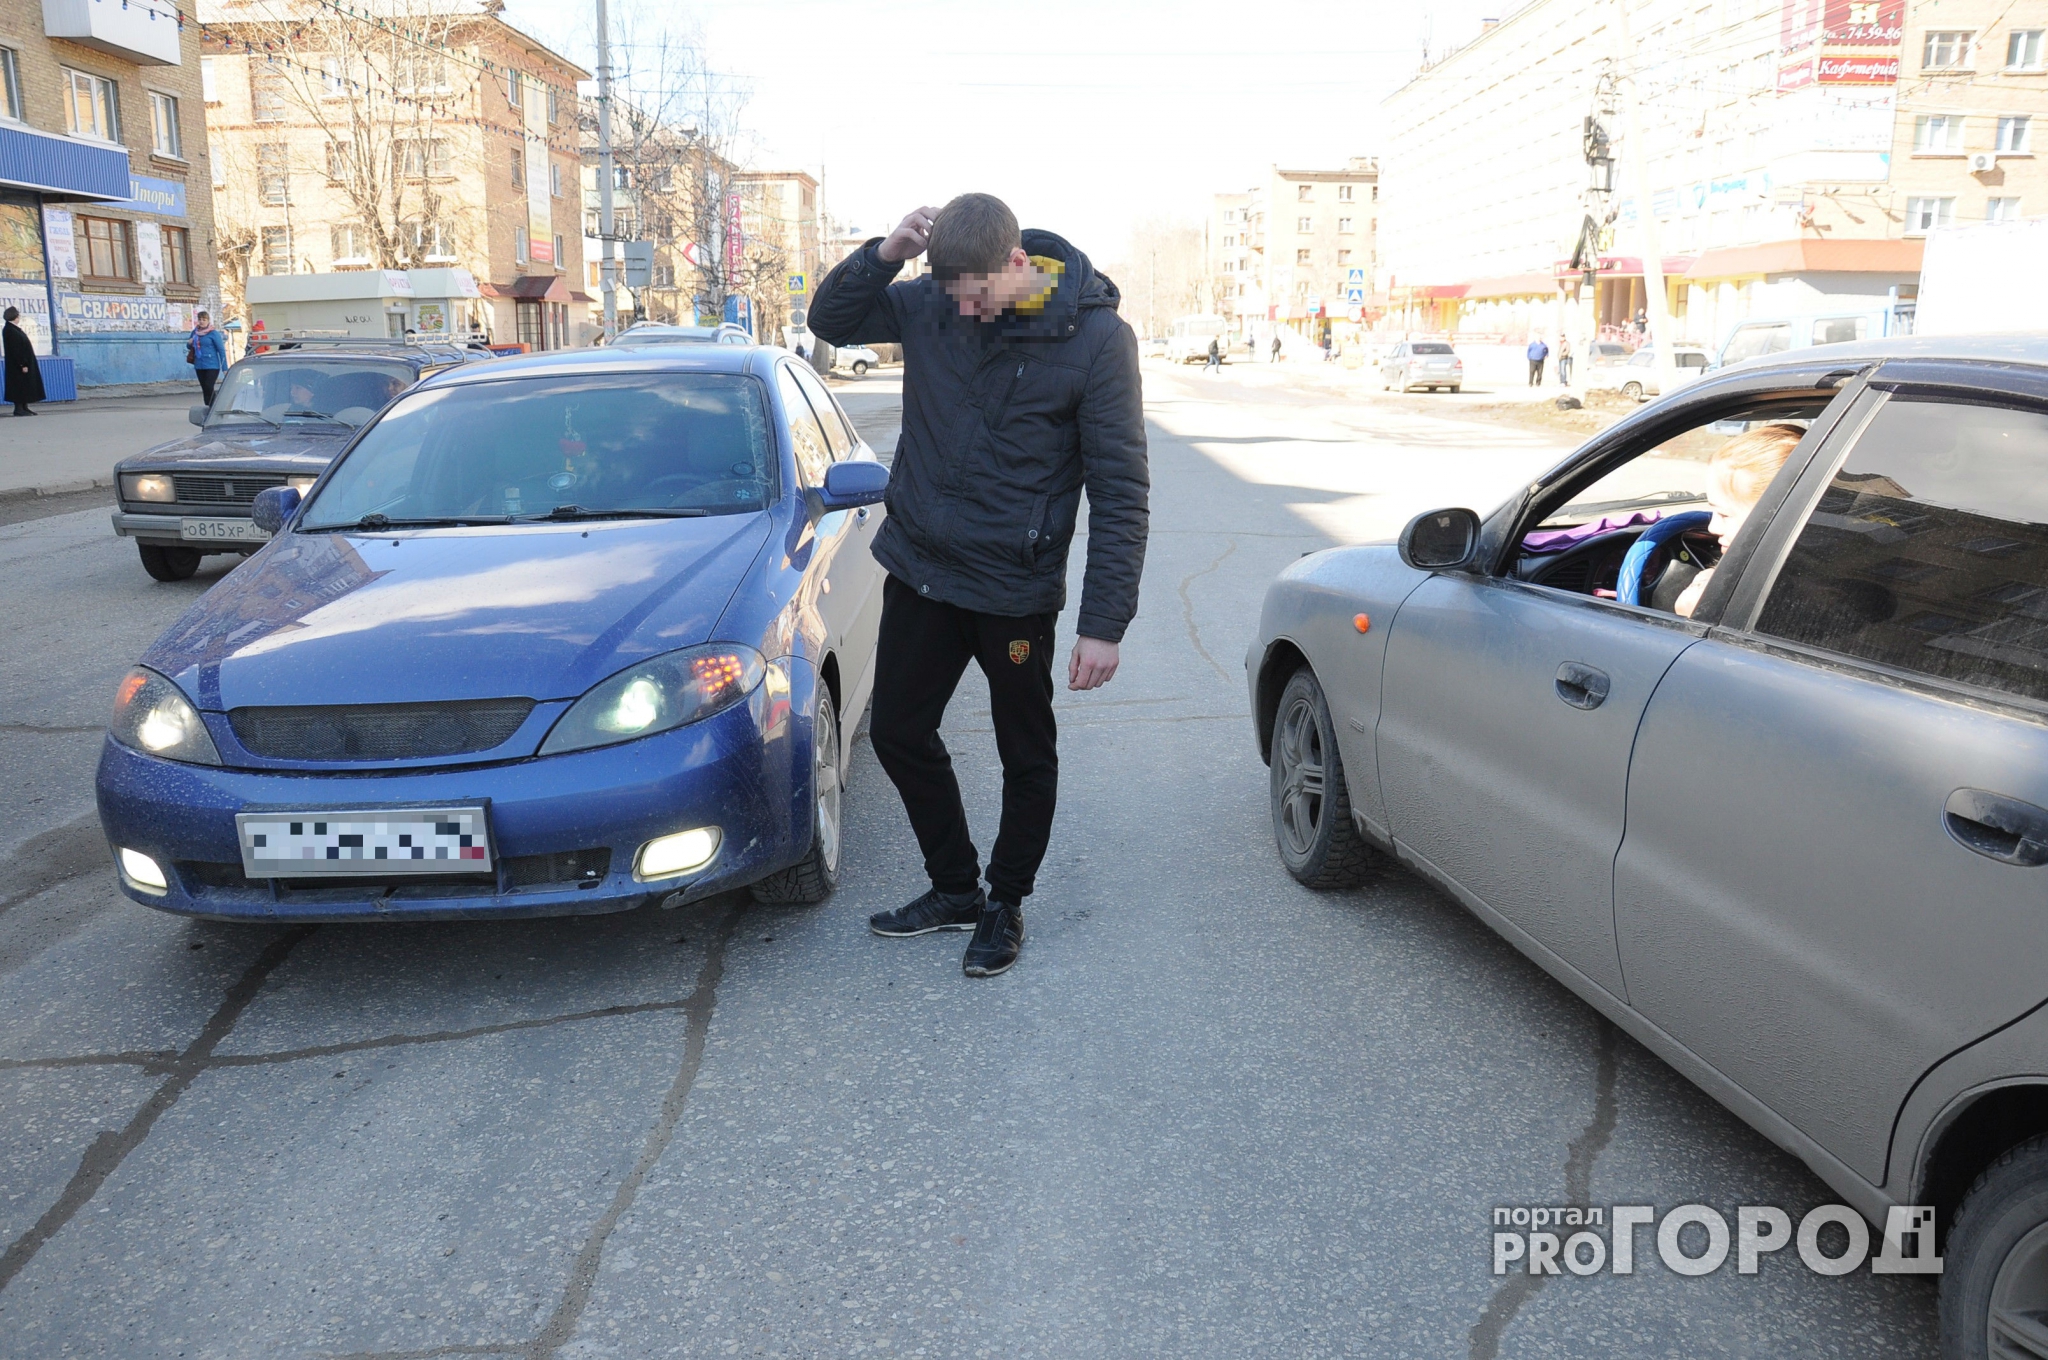 В Ярославле парень заметил бесхозный автомобиль и решил его продать